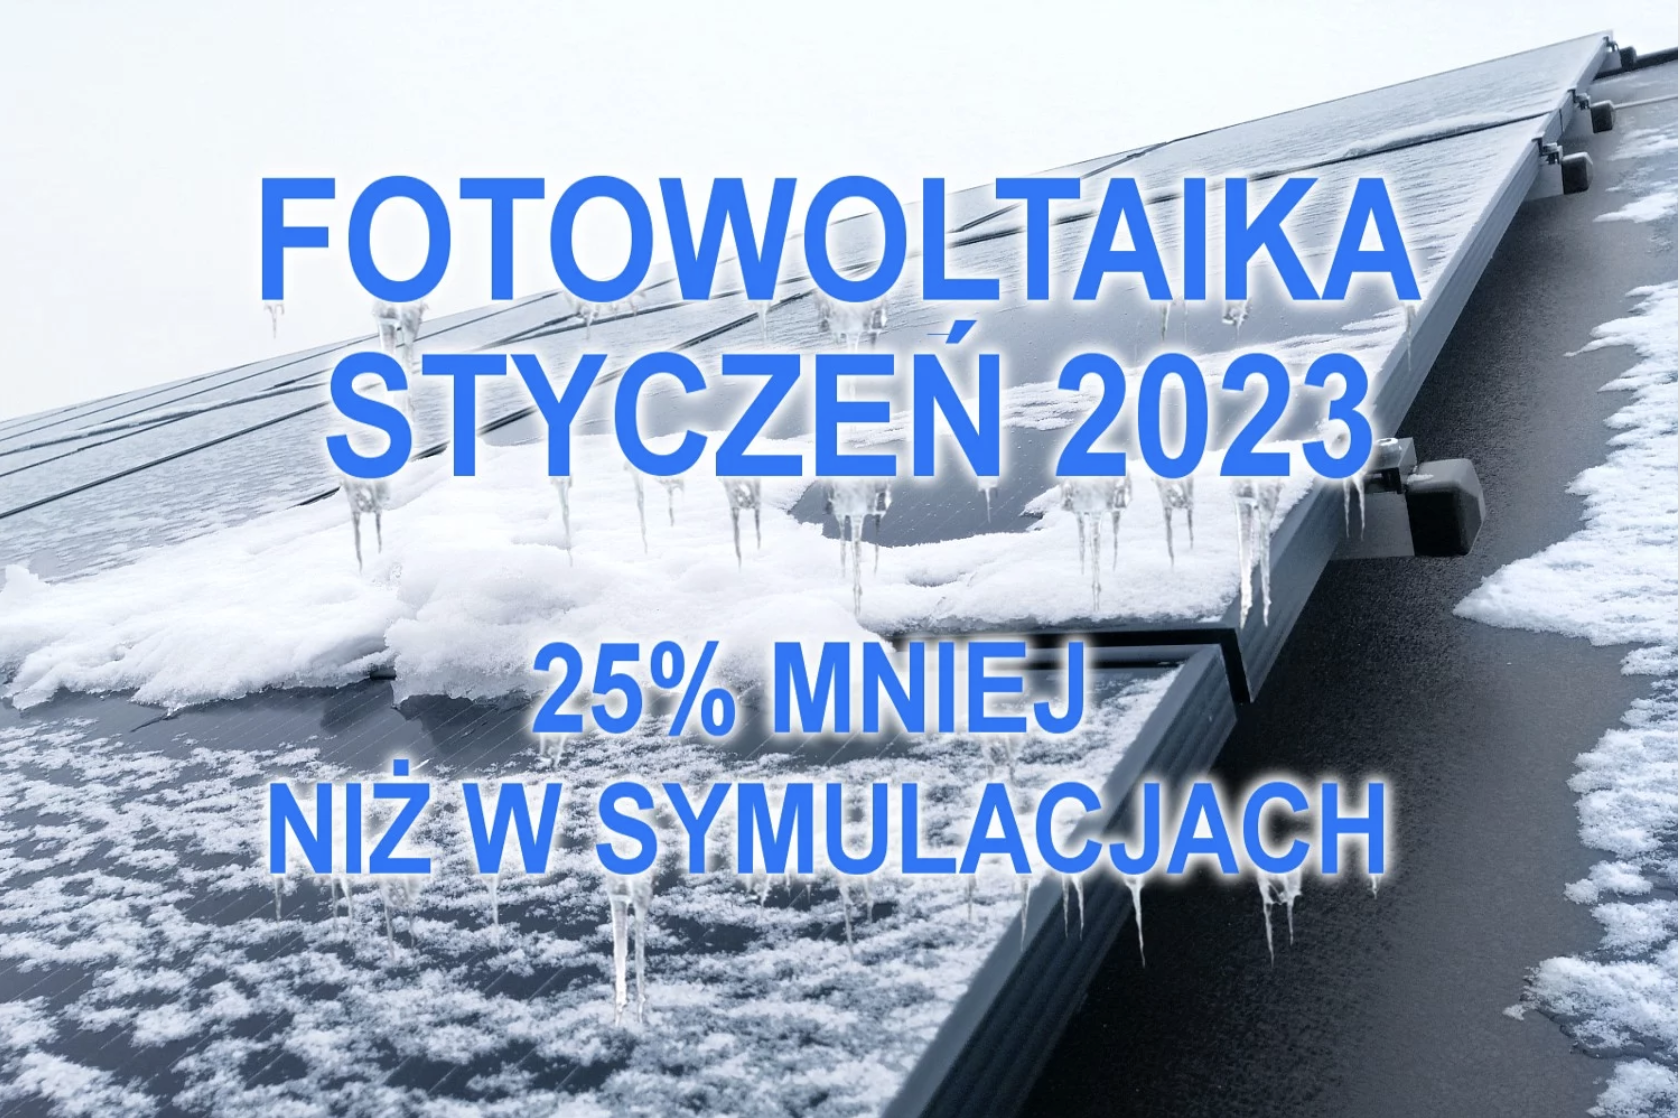 Polska Energia Fotowoltaika Oświęcim Info Oswiecim Info Malopolska Info Polska